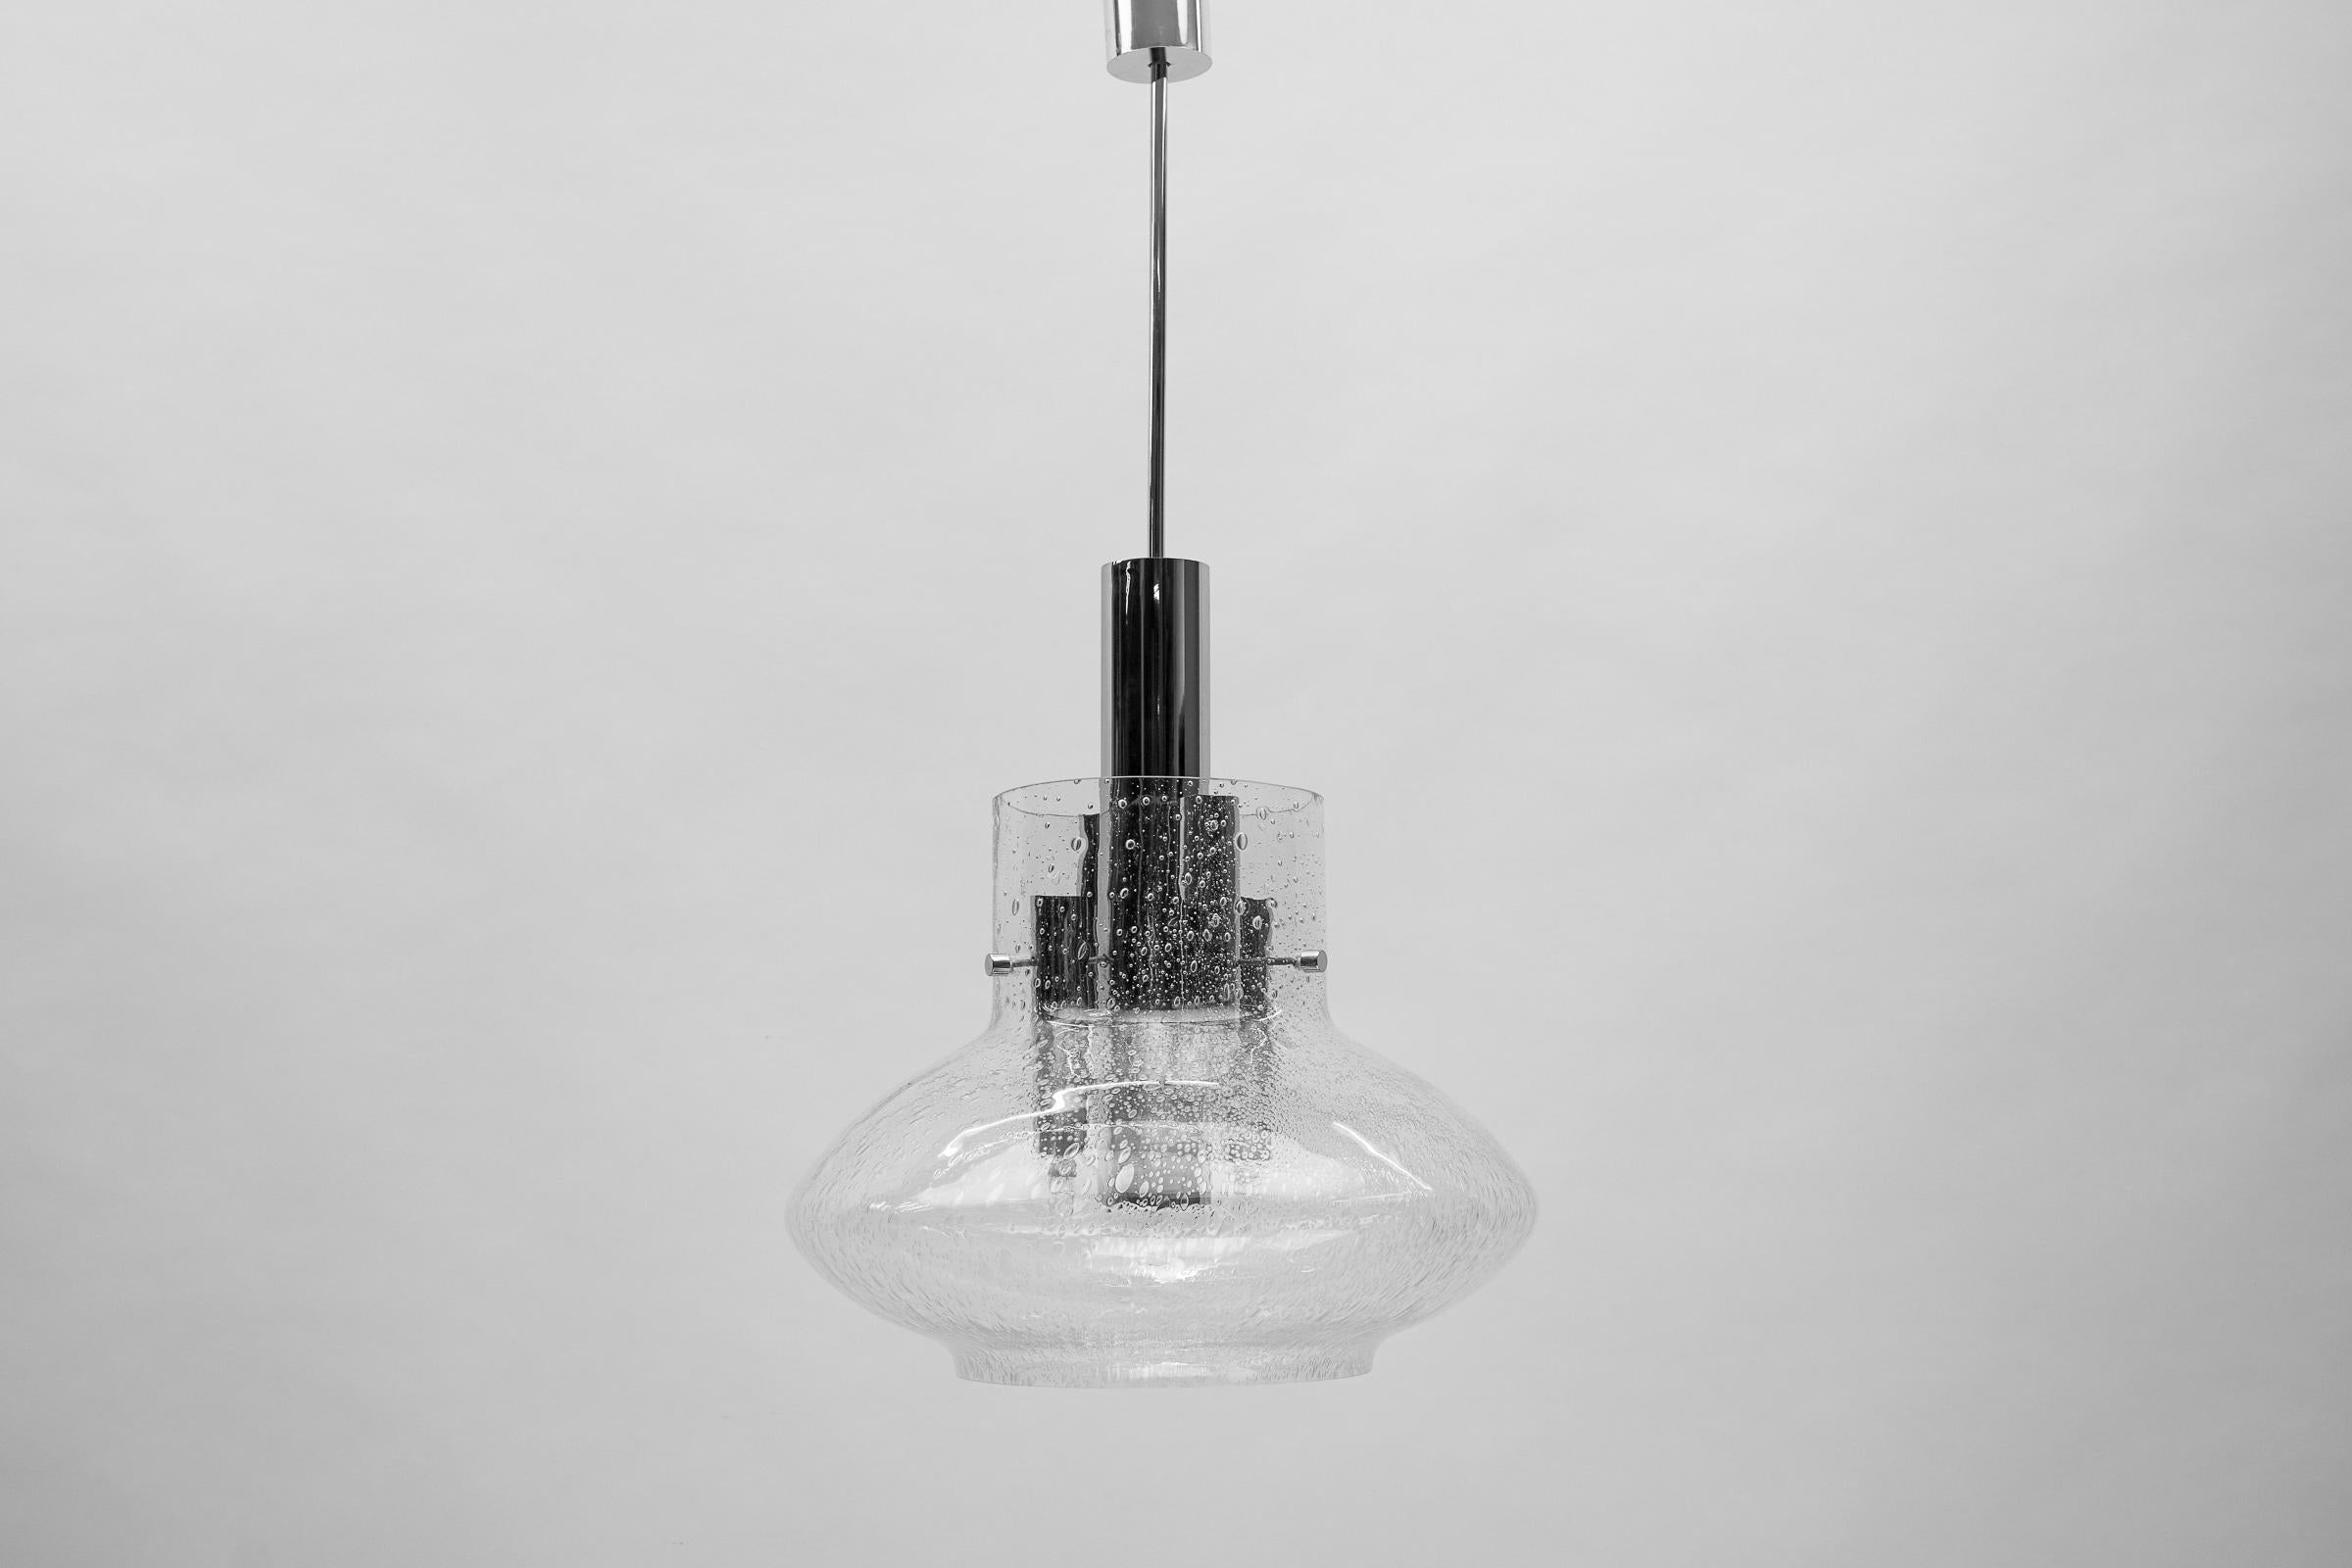 Space Age-Pendelleuchte aus Chrom und Glas, 1970er-Jahre

Breite: 40 Zentimeter, Höhe: 80 zentimeter

Vollständig funktionsfähig.

Vier E14-Fassungen und eine E27-Fassung. Funktioniert mit 220V und 110V.

Unsere Lampen werden geprüft, gereinigt und